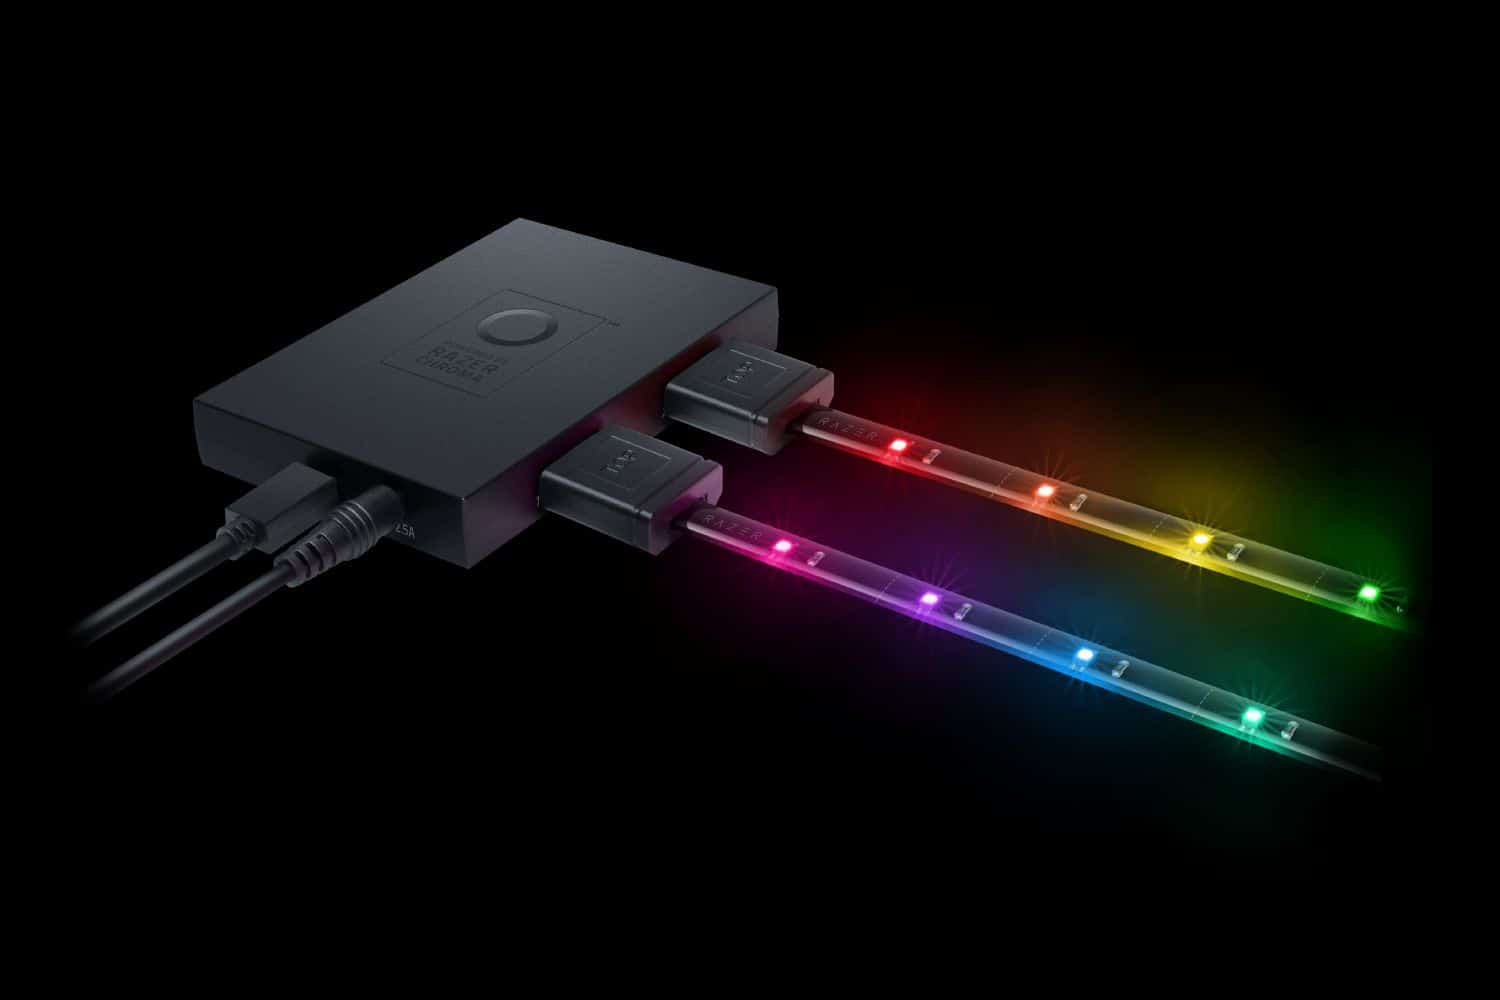 La iluminación Razer Chroma ahora disponible en dispositivos de terceros